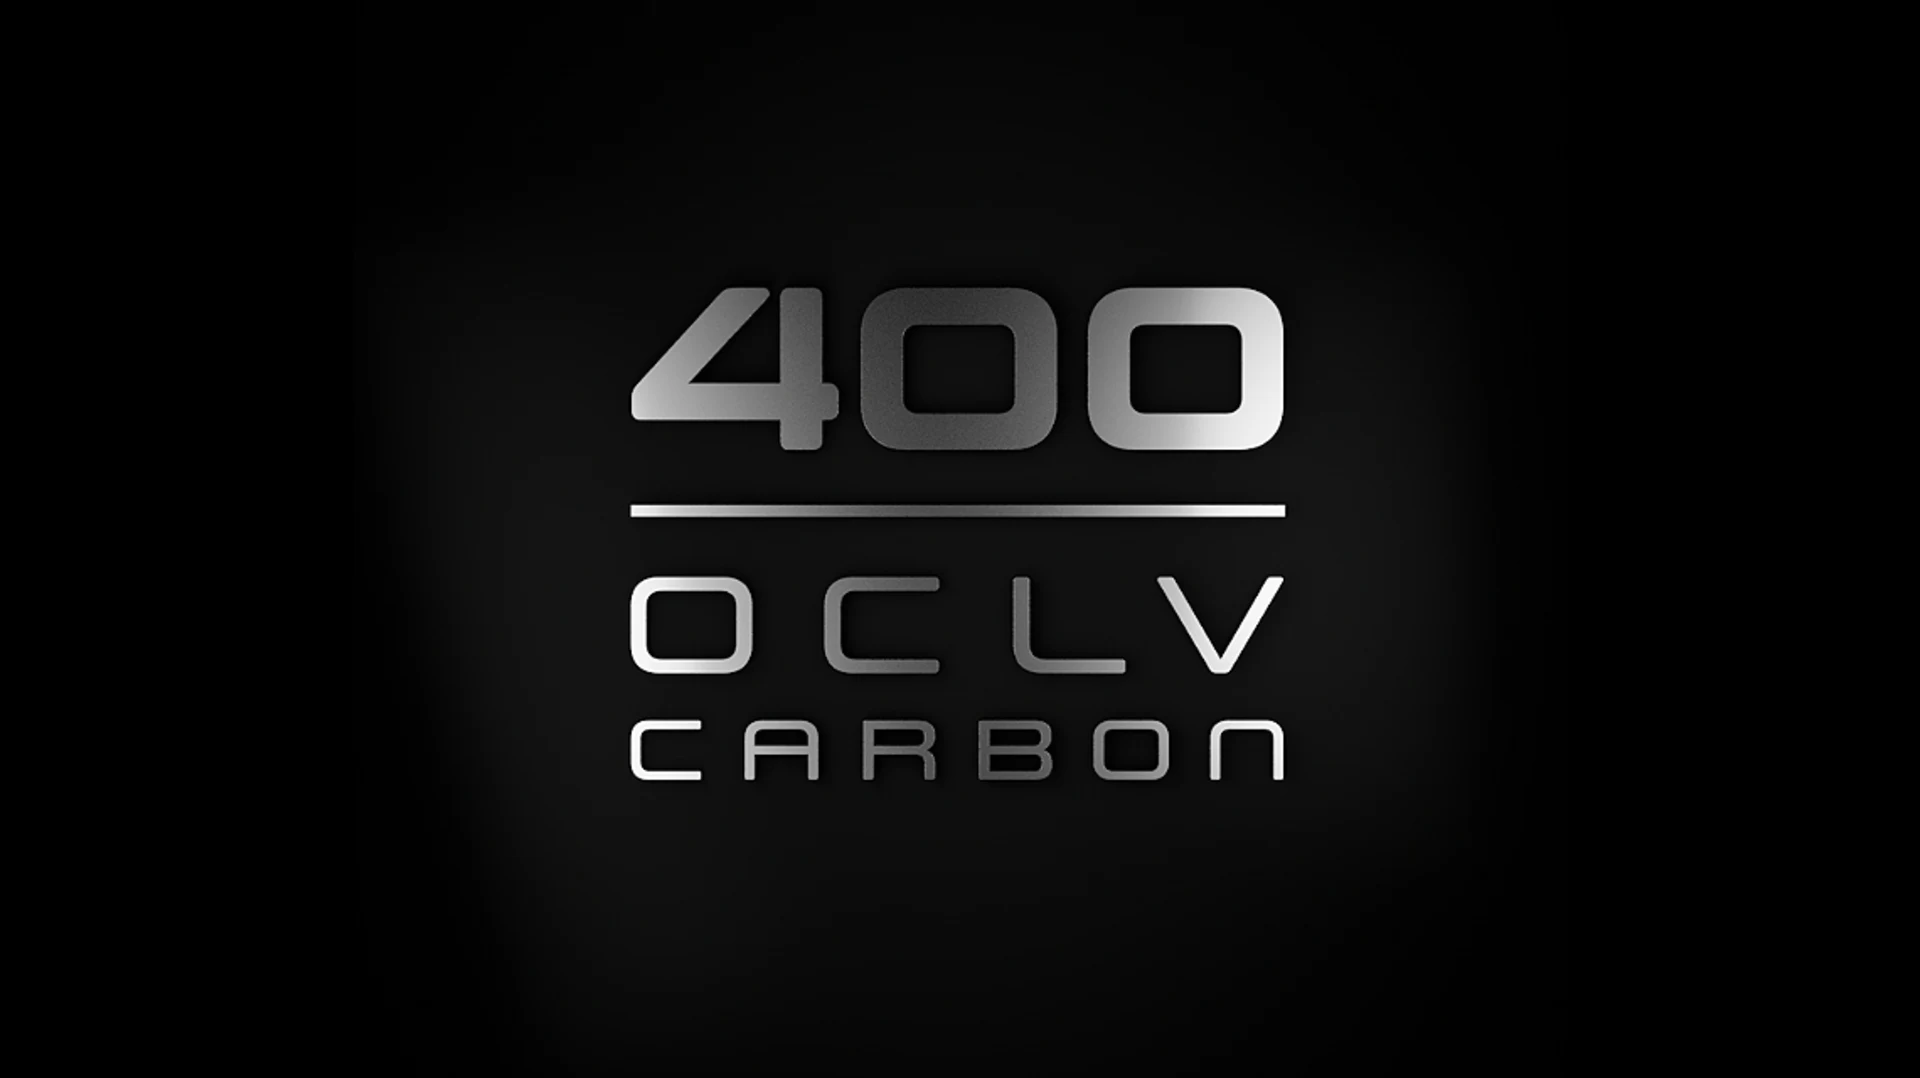 Feature 400 OCLV